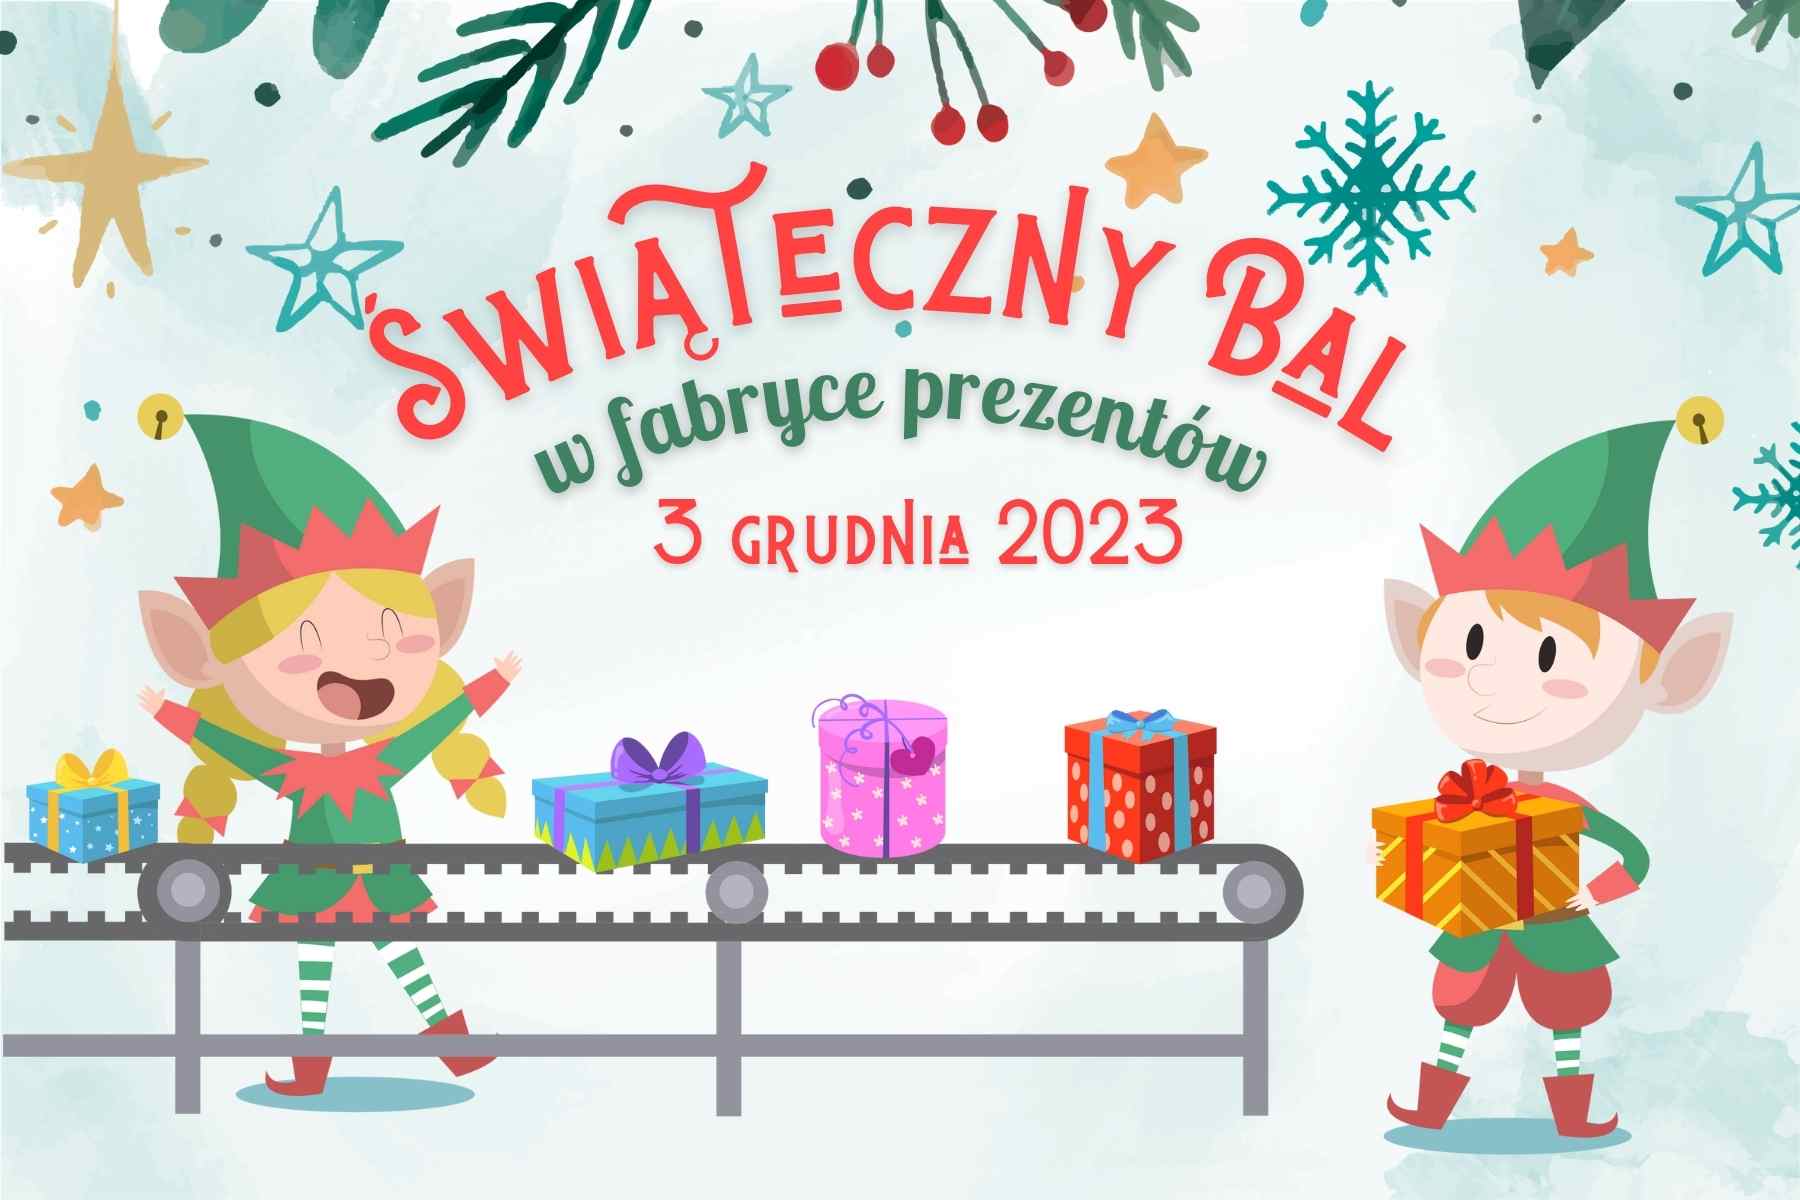 bal świąteczny 2023 – Jagielski Dance Project